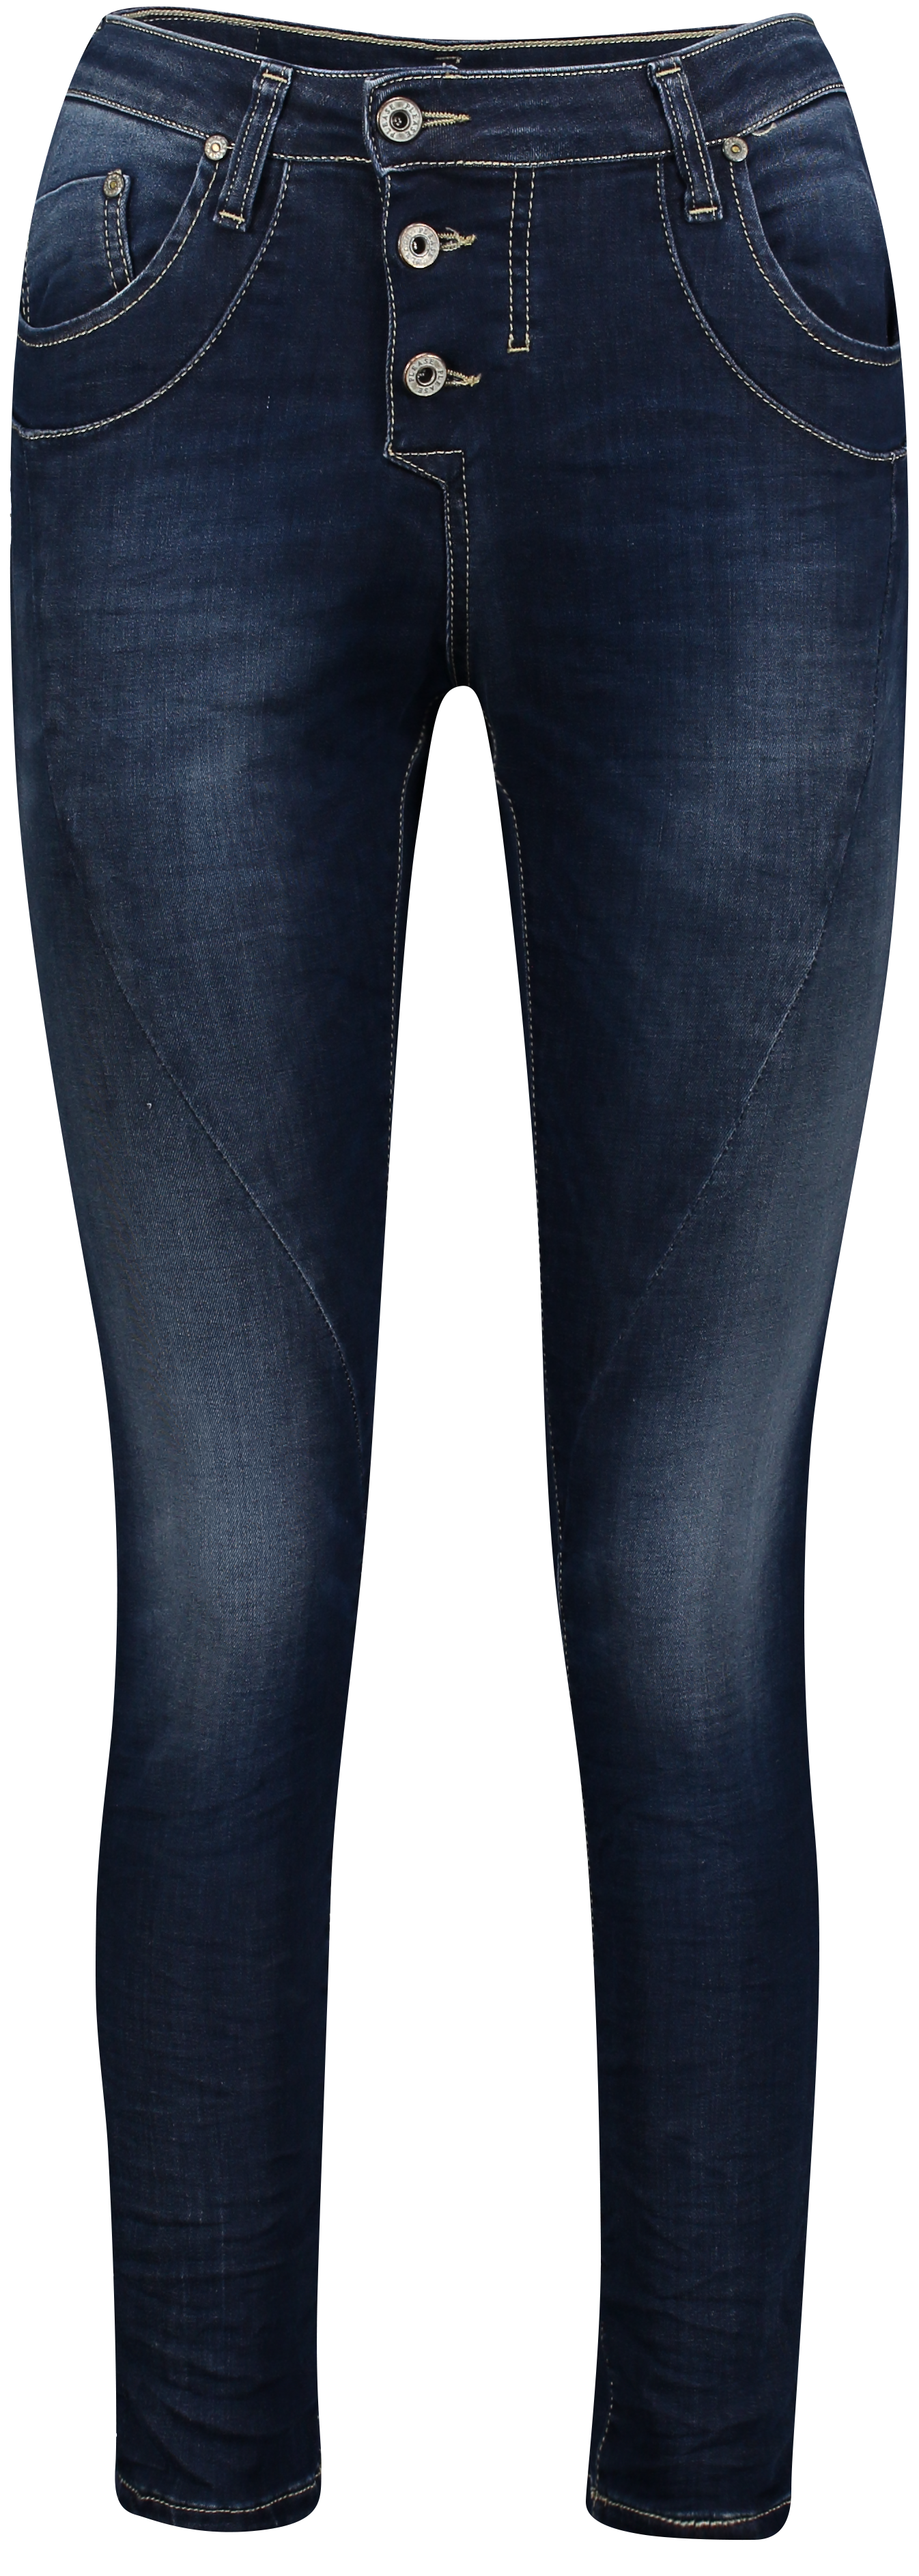 Trousers P78A_KM6E02 1670 Blu Denim